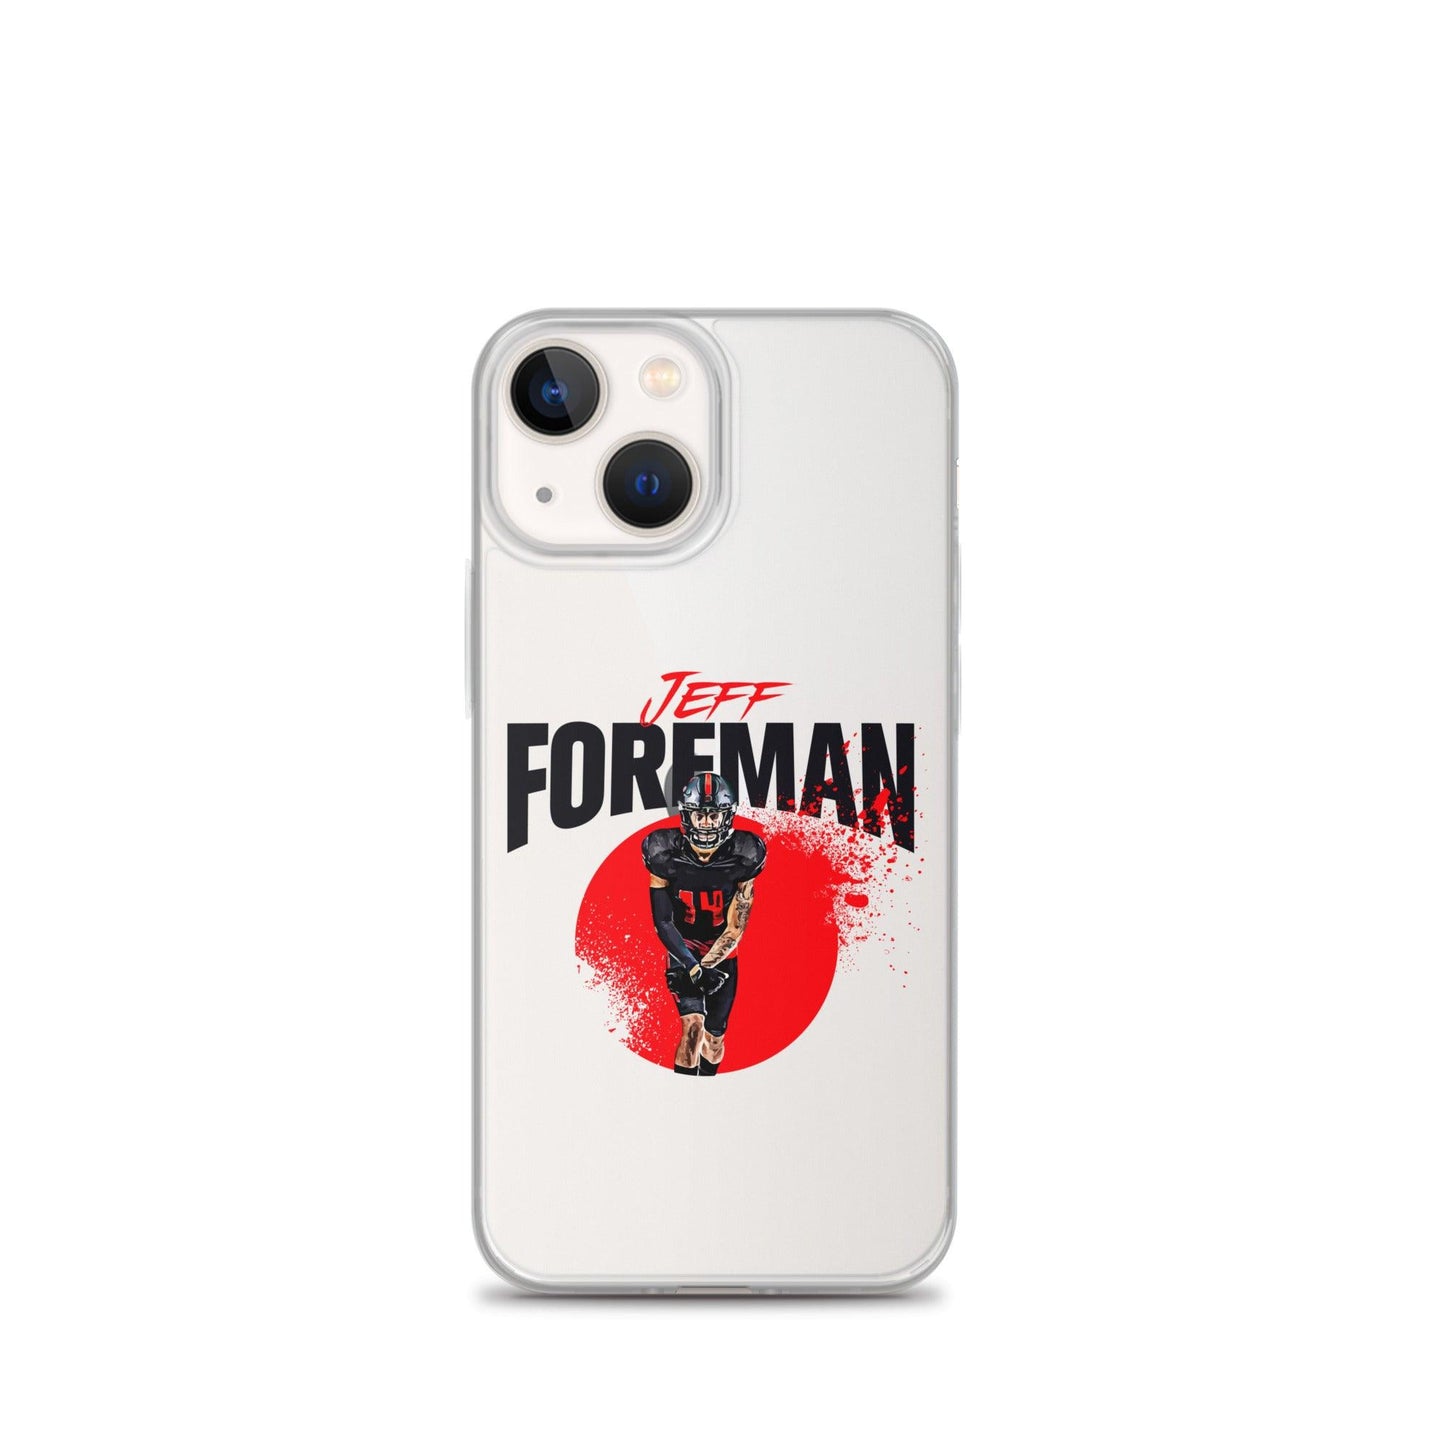 Jeff Foreman "Splash" iPhone Case - Fan Arch